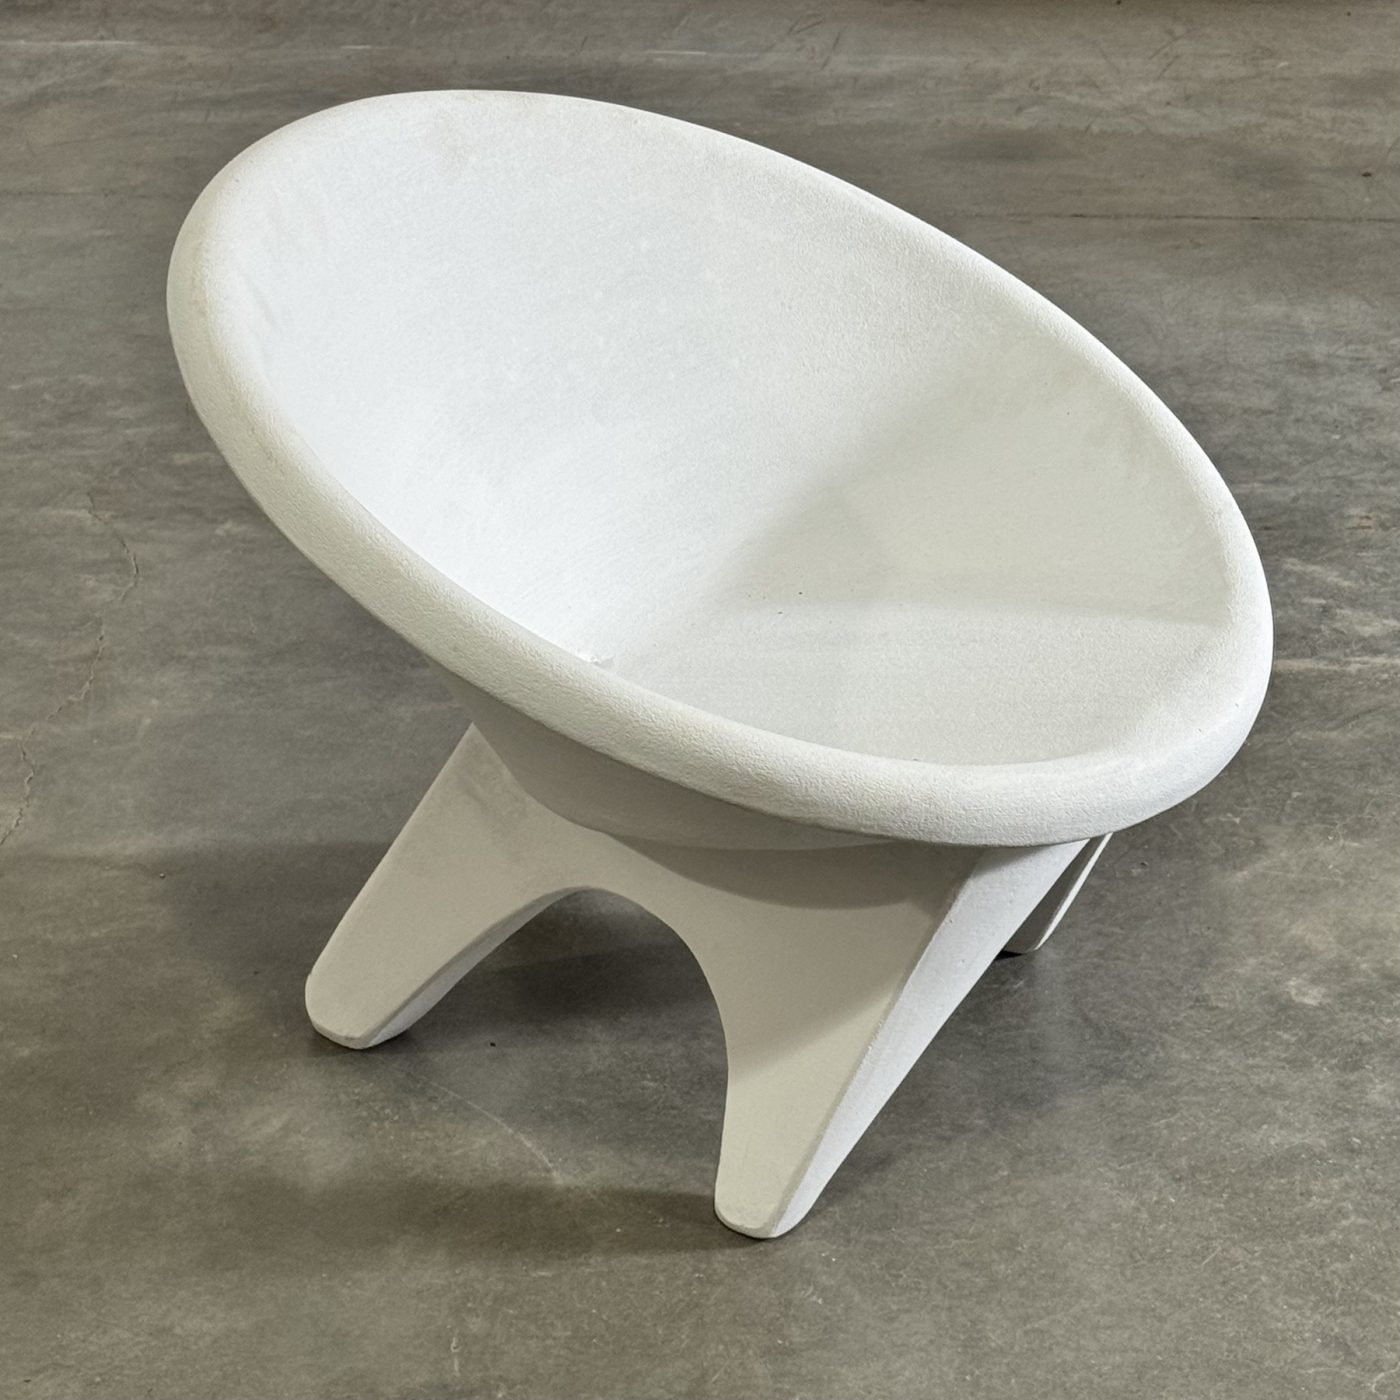 objet-vagabond-concrete-armchairs0002